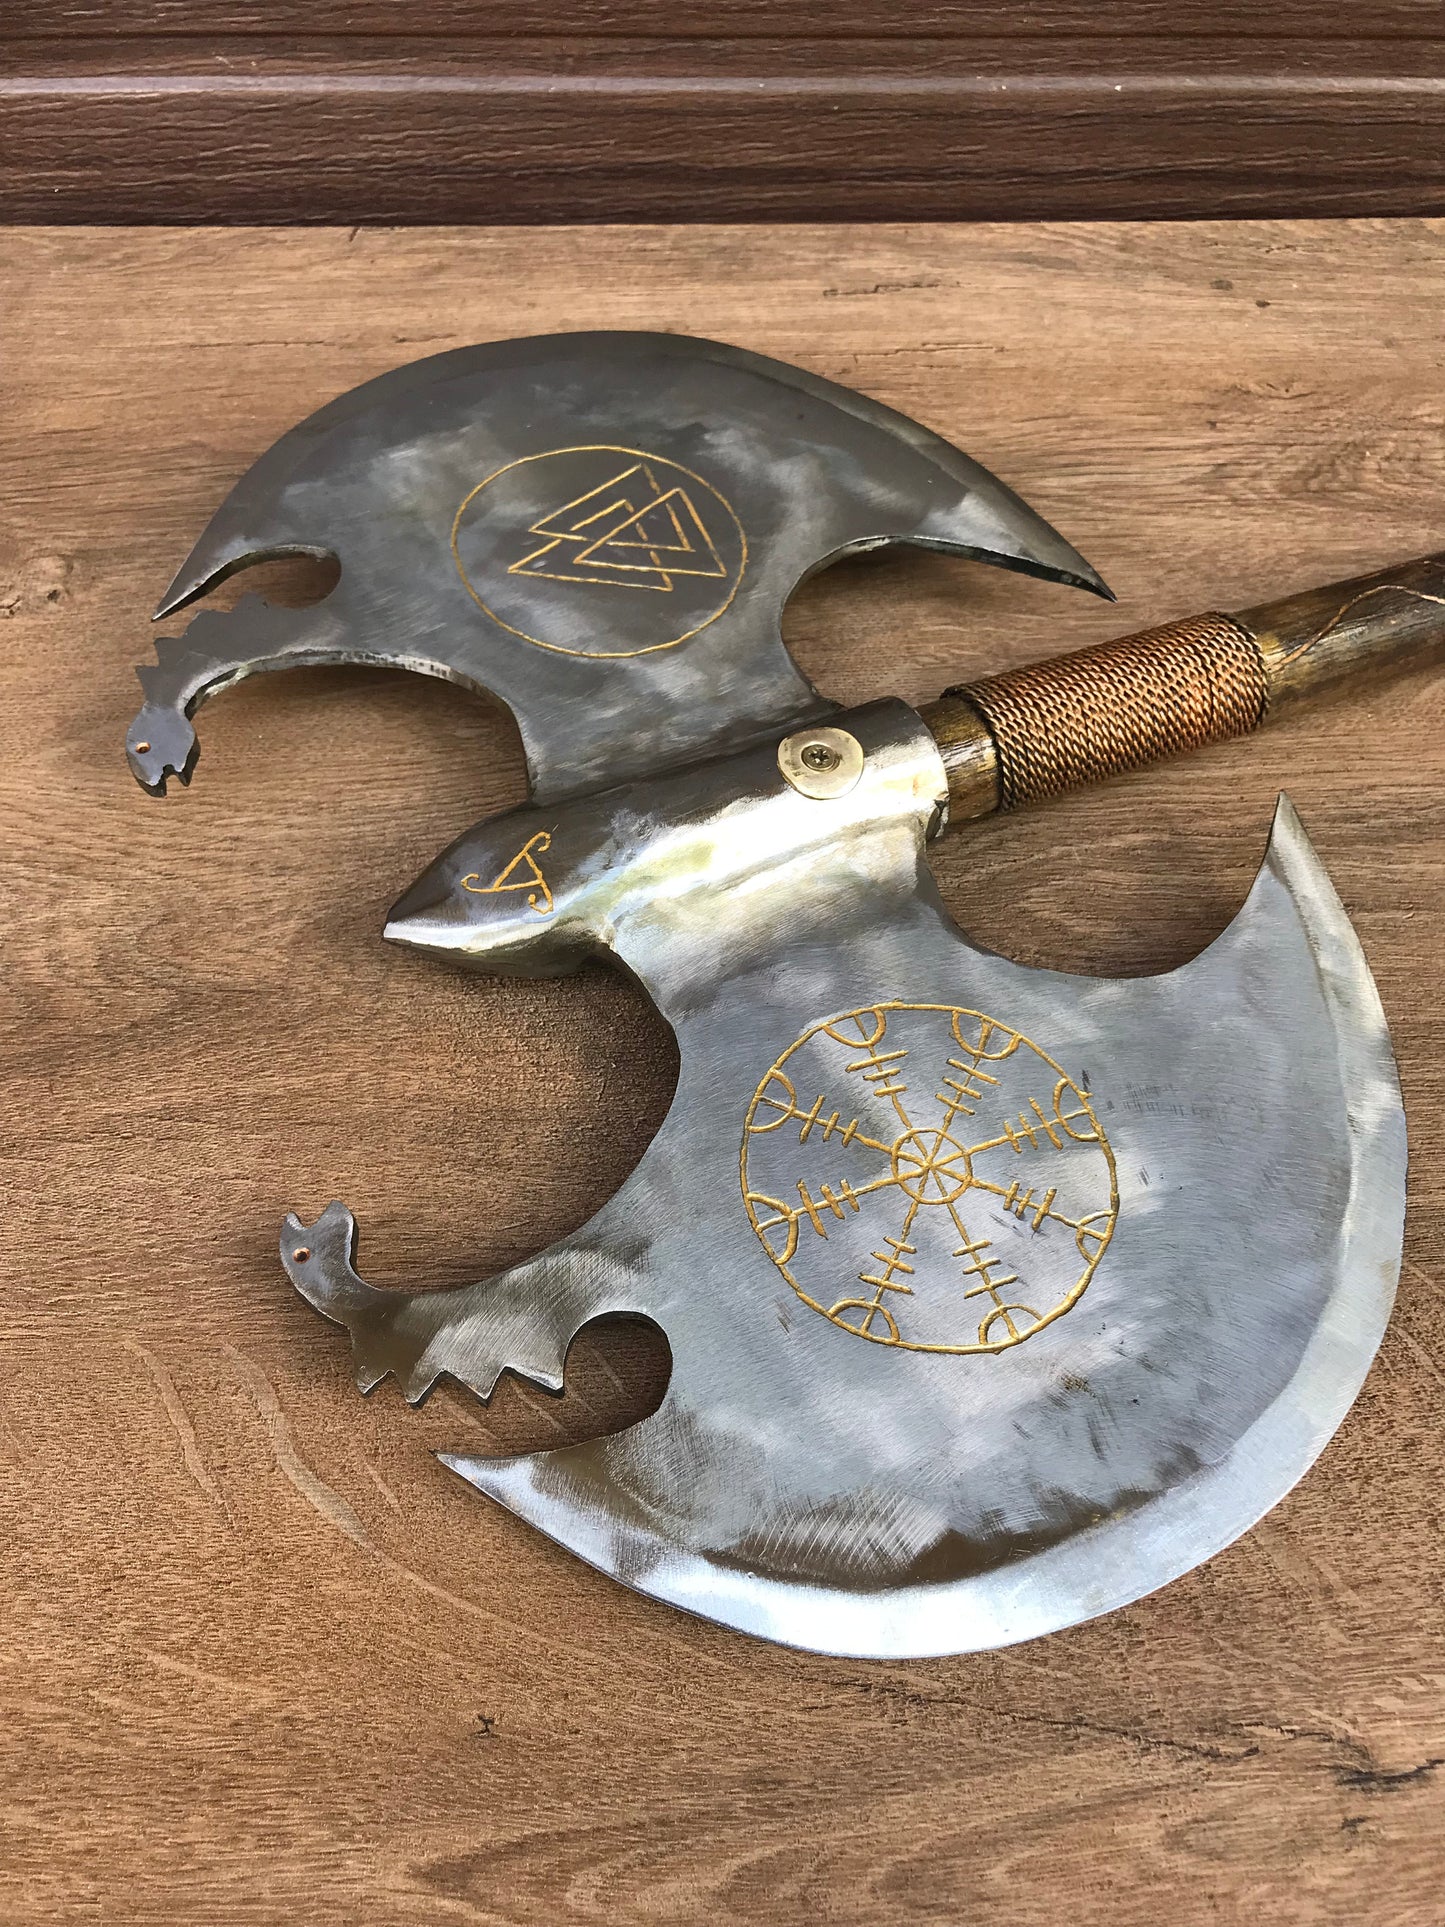 Runic axe, medieval axe, axe gift, valknut, vegvisir, runic compass, viking symbols, viking axe, Leviathan axe, Kratos axe, cosplay weapon